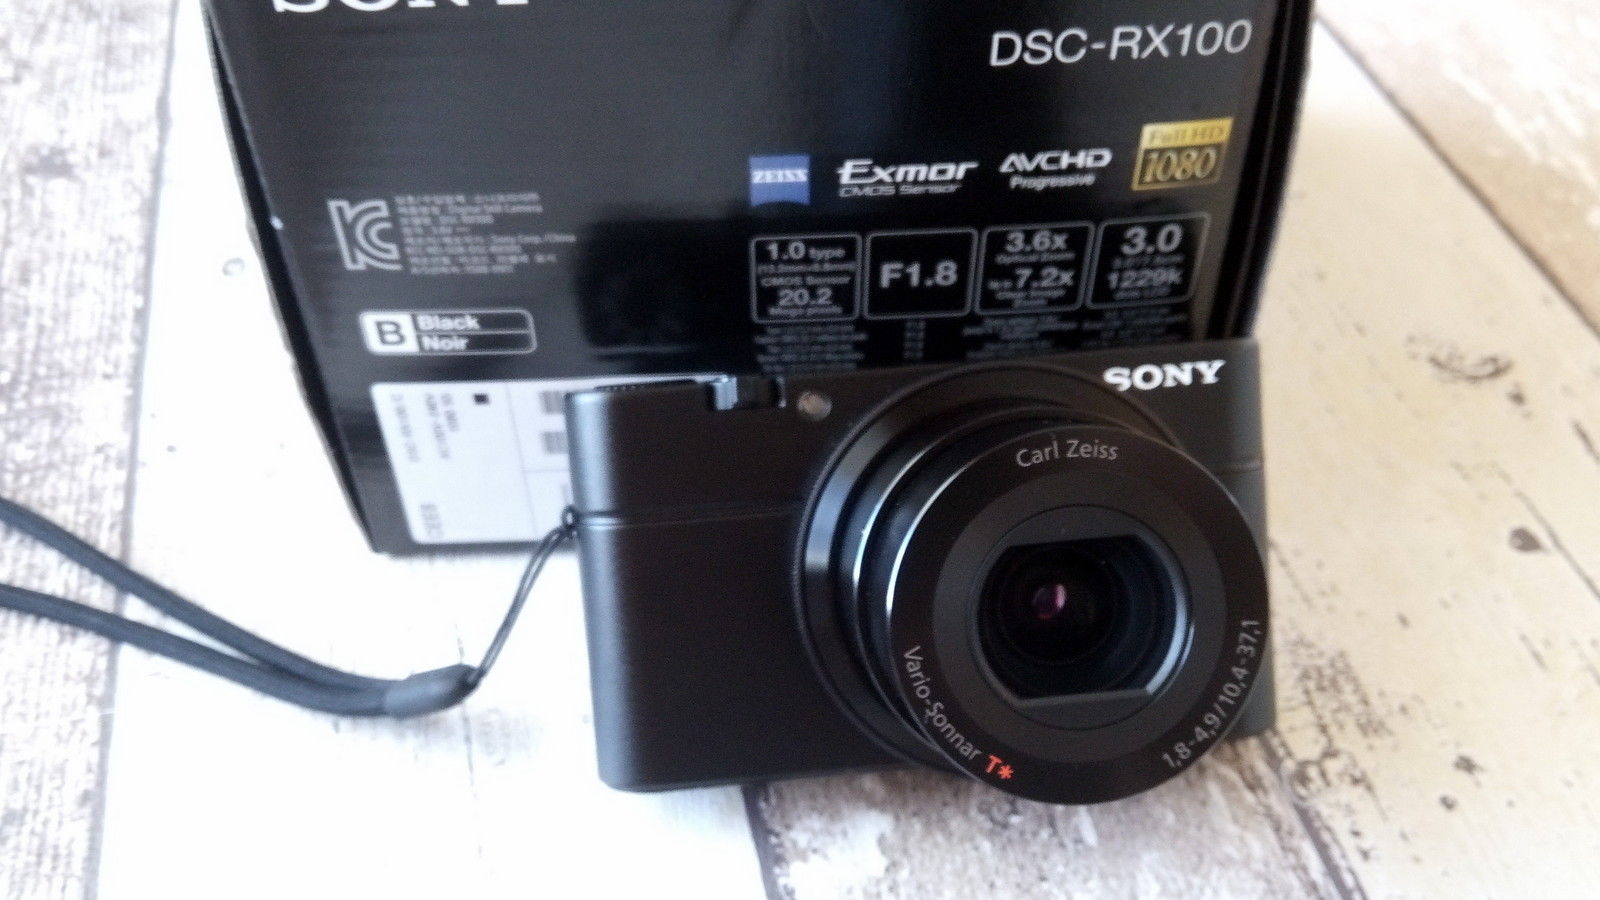 Sony Cyber-shot DSC-RX100/C 20.2 MP Digitalkamera - Schwarz sehr guter zustand.